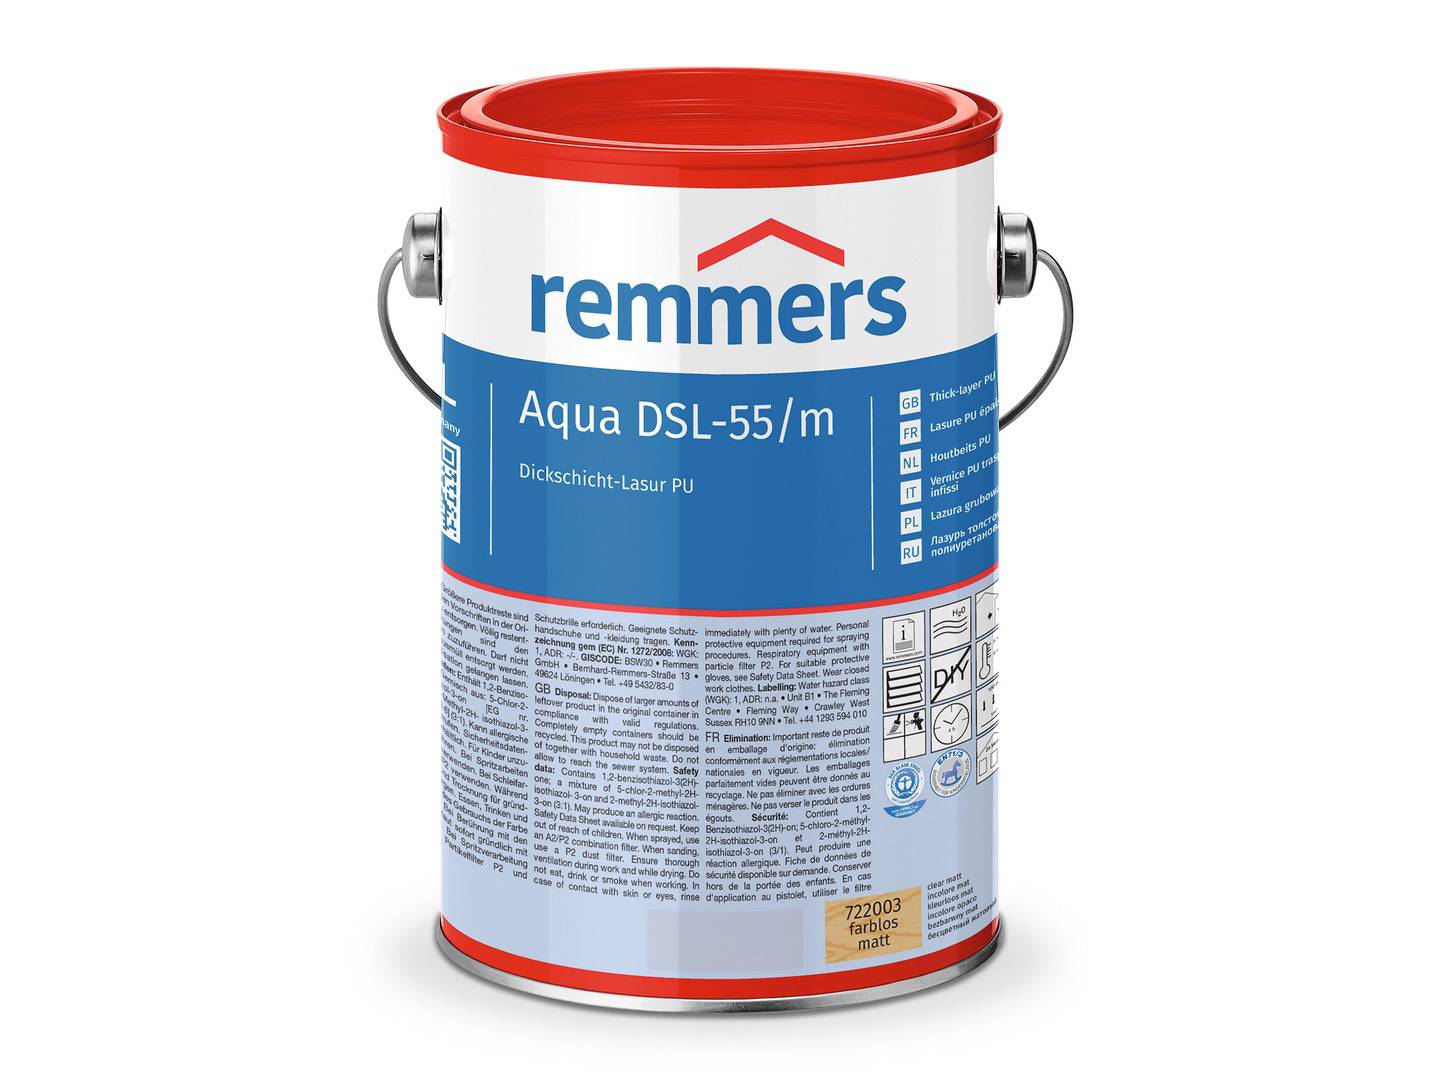 REMMERS Aqua DSL-55-Dickschicht-Lasur PU nussbaum (RC-660) seidenglänzend 2,50 l